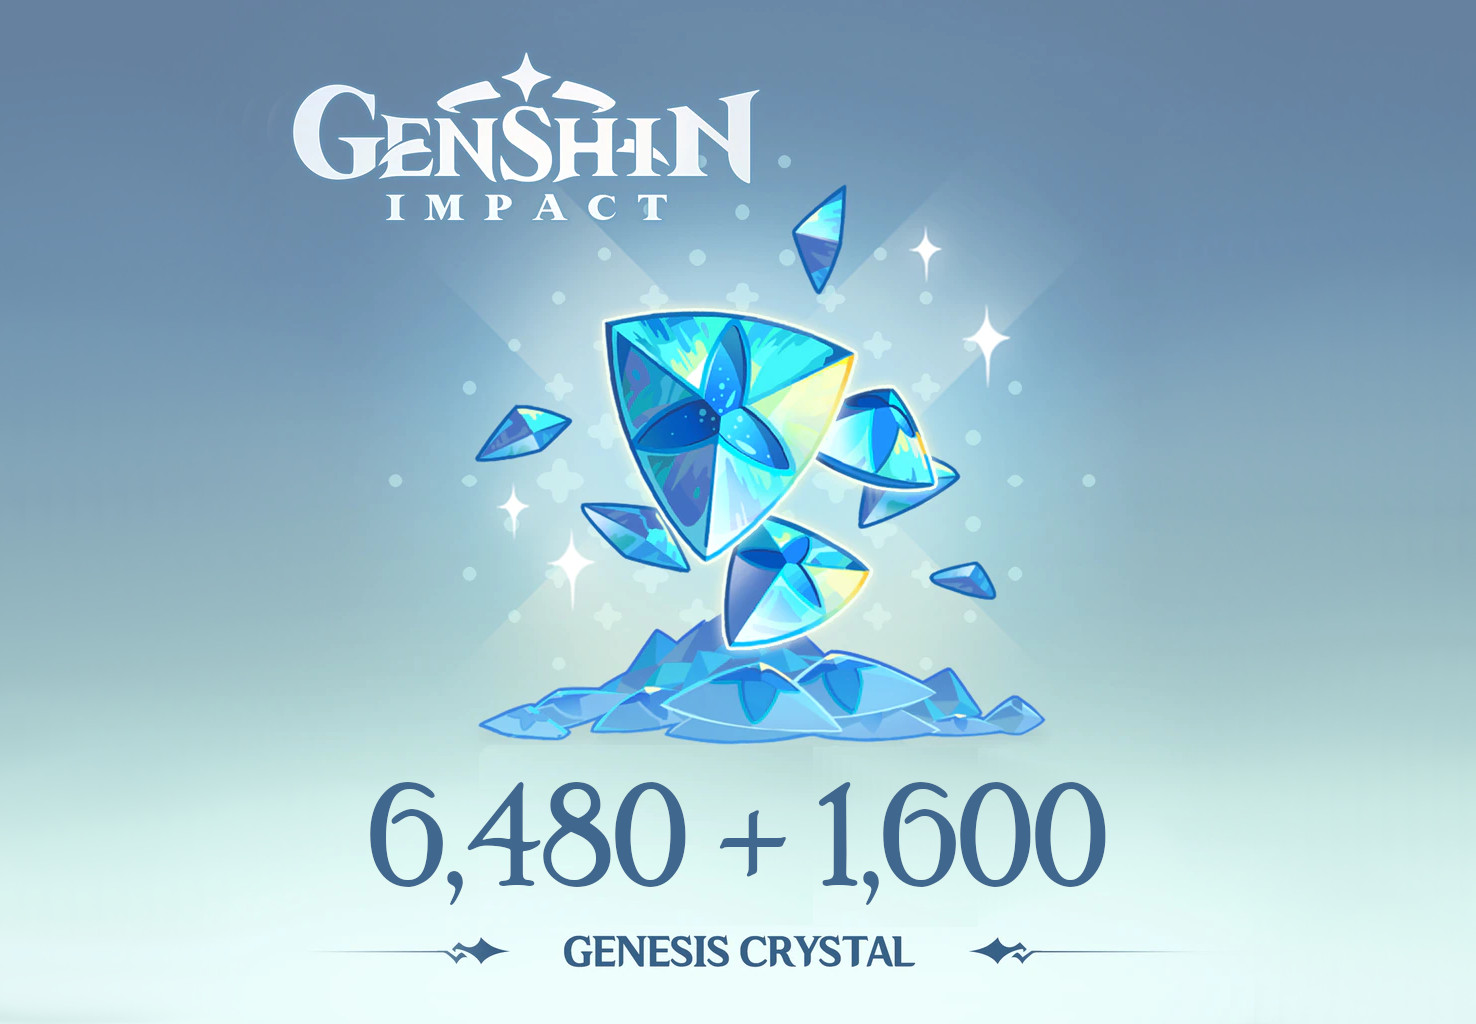 Genshin Impact - 6,480 + 1,600 Genesis Crystals Reidos Voucher 107.29$